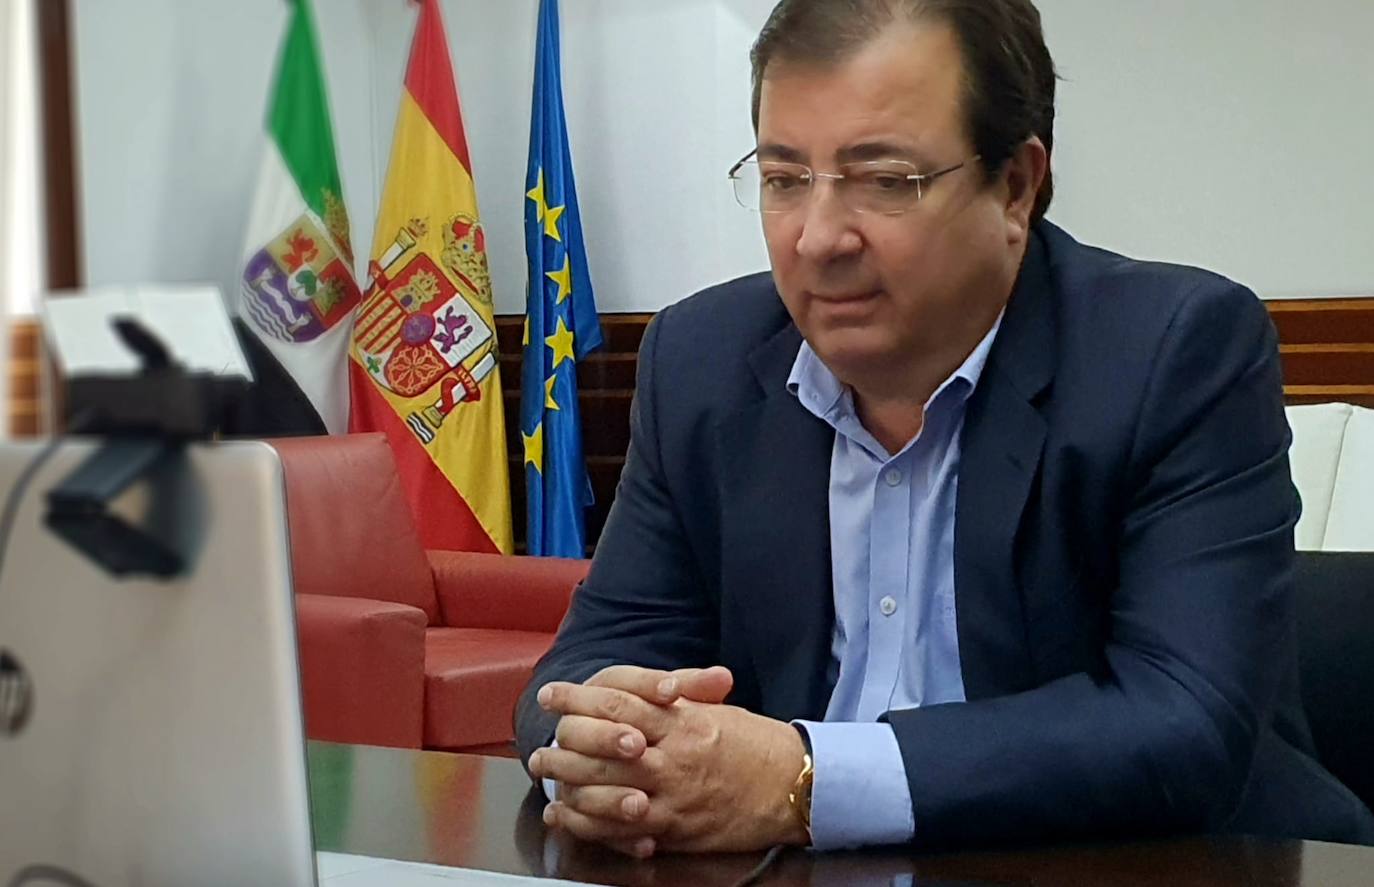 Fernández Vara atendió por videoconferencia, el pasado 17 de septiembre, a HOY Olivenza desde su despacho de la Asamblea de Extremadura. 